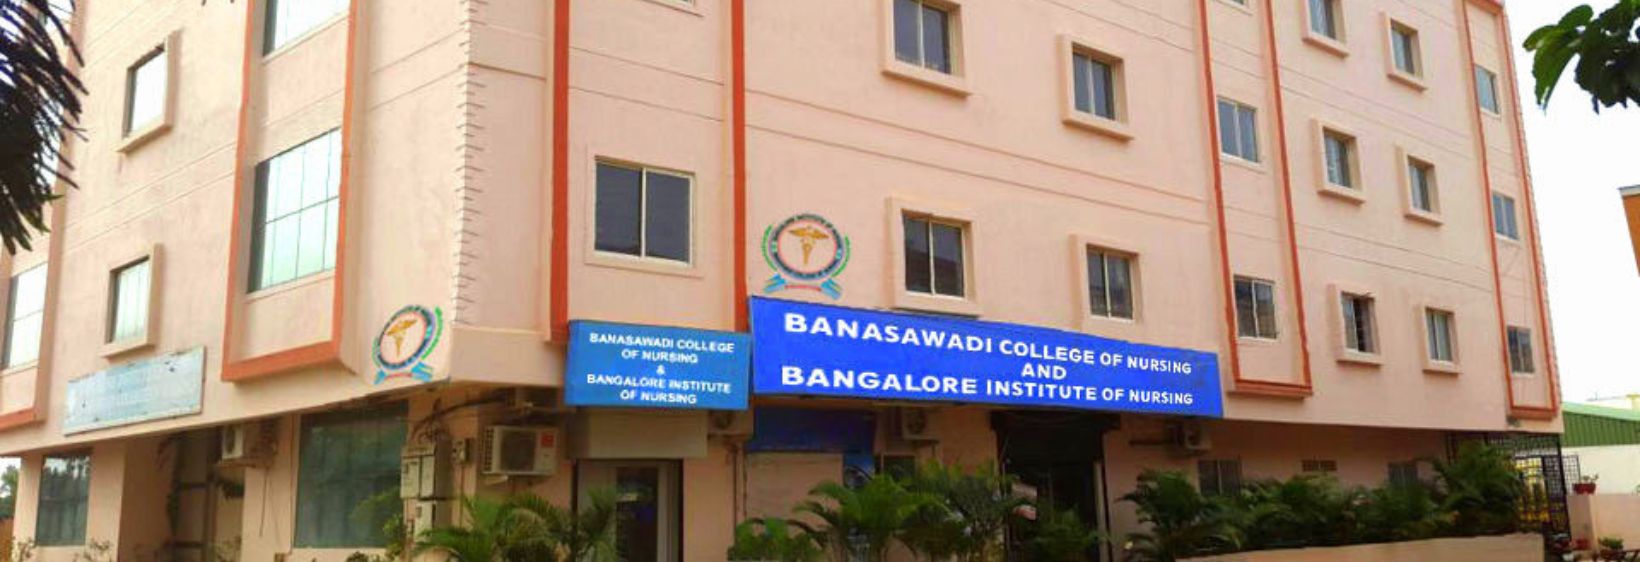 Banasawadi College of Nursing - Bangalore